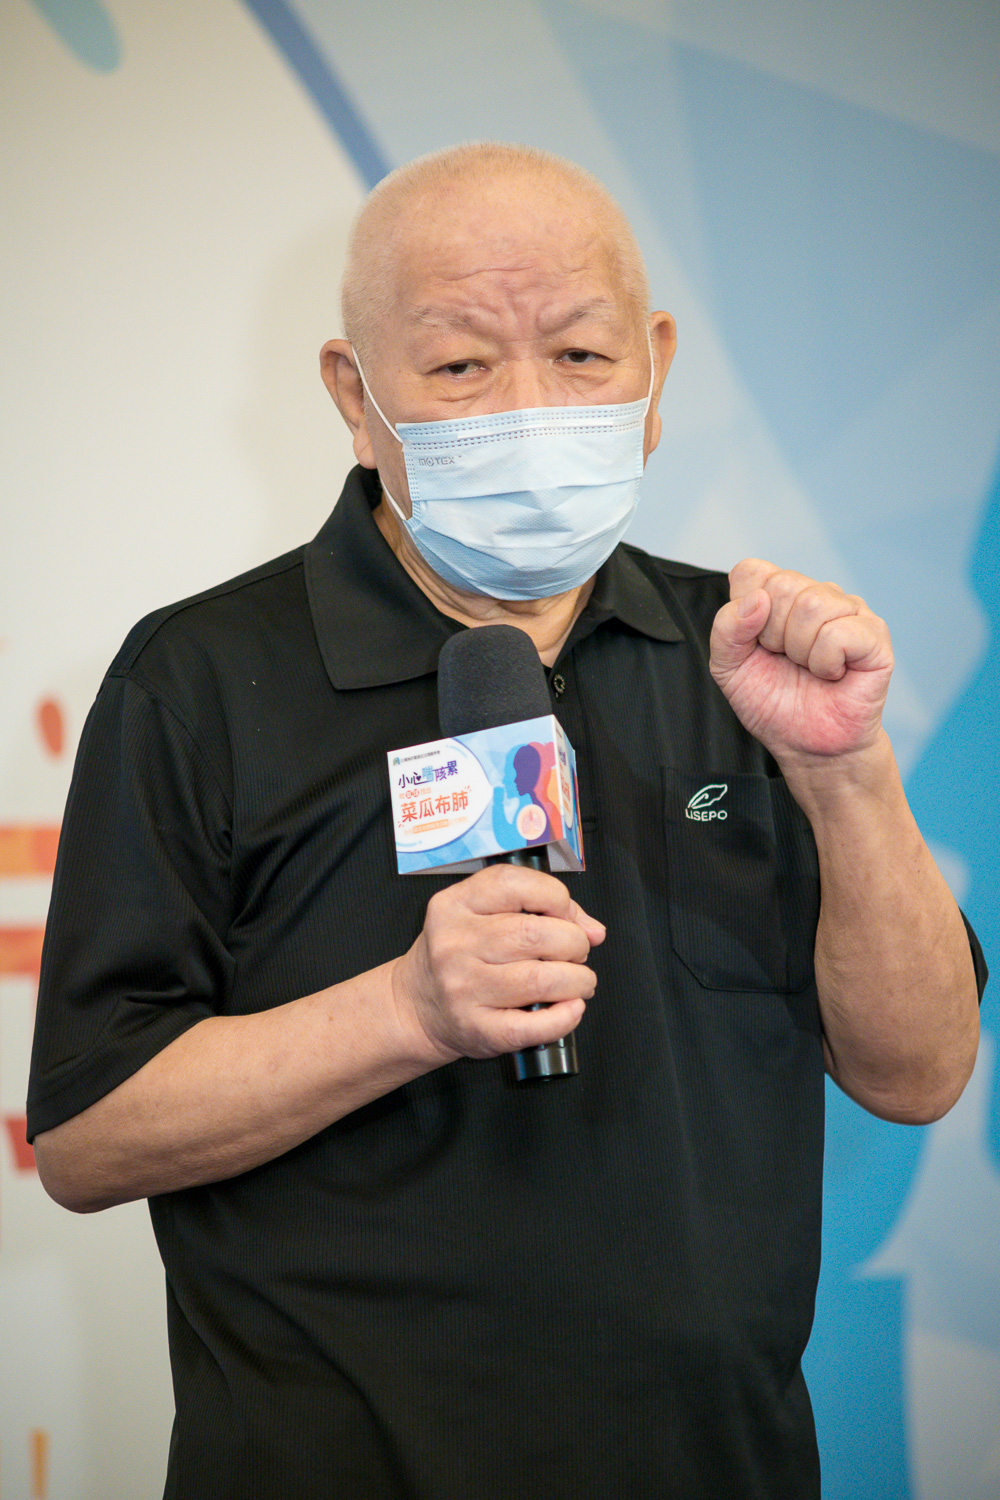 特發性肺纖維化年度衛教大使邱彥翔現場展示氣球可通過該年齡層的肺活量大小。